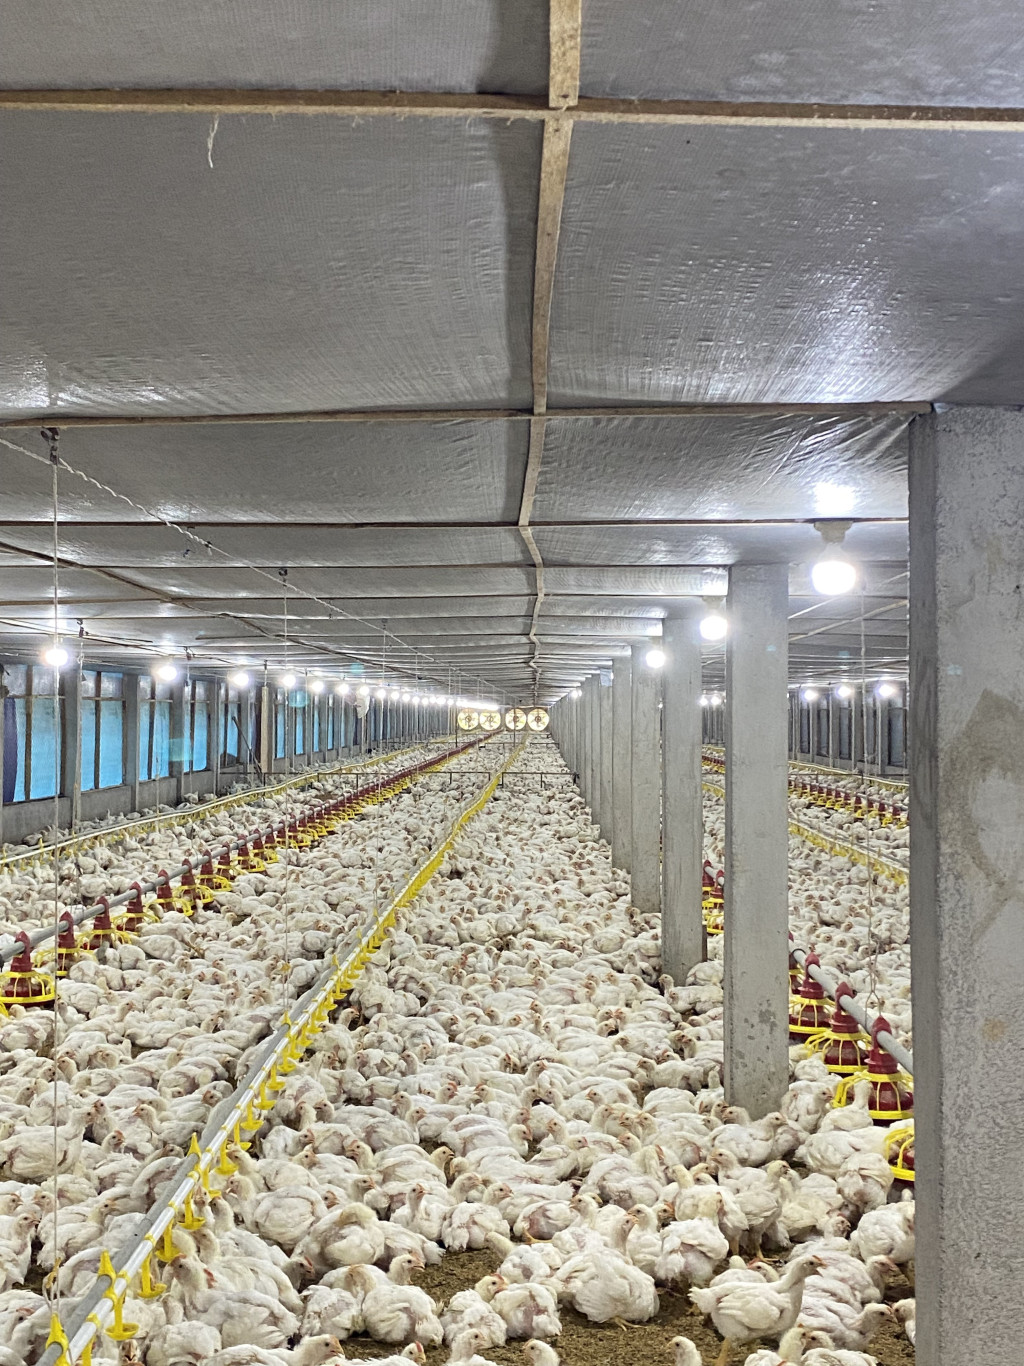 Peternakan ayam yang sudah modern dan memenuhi SNI dengan kandang bersistem close house.